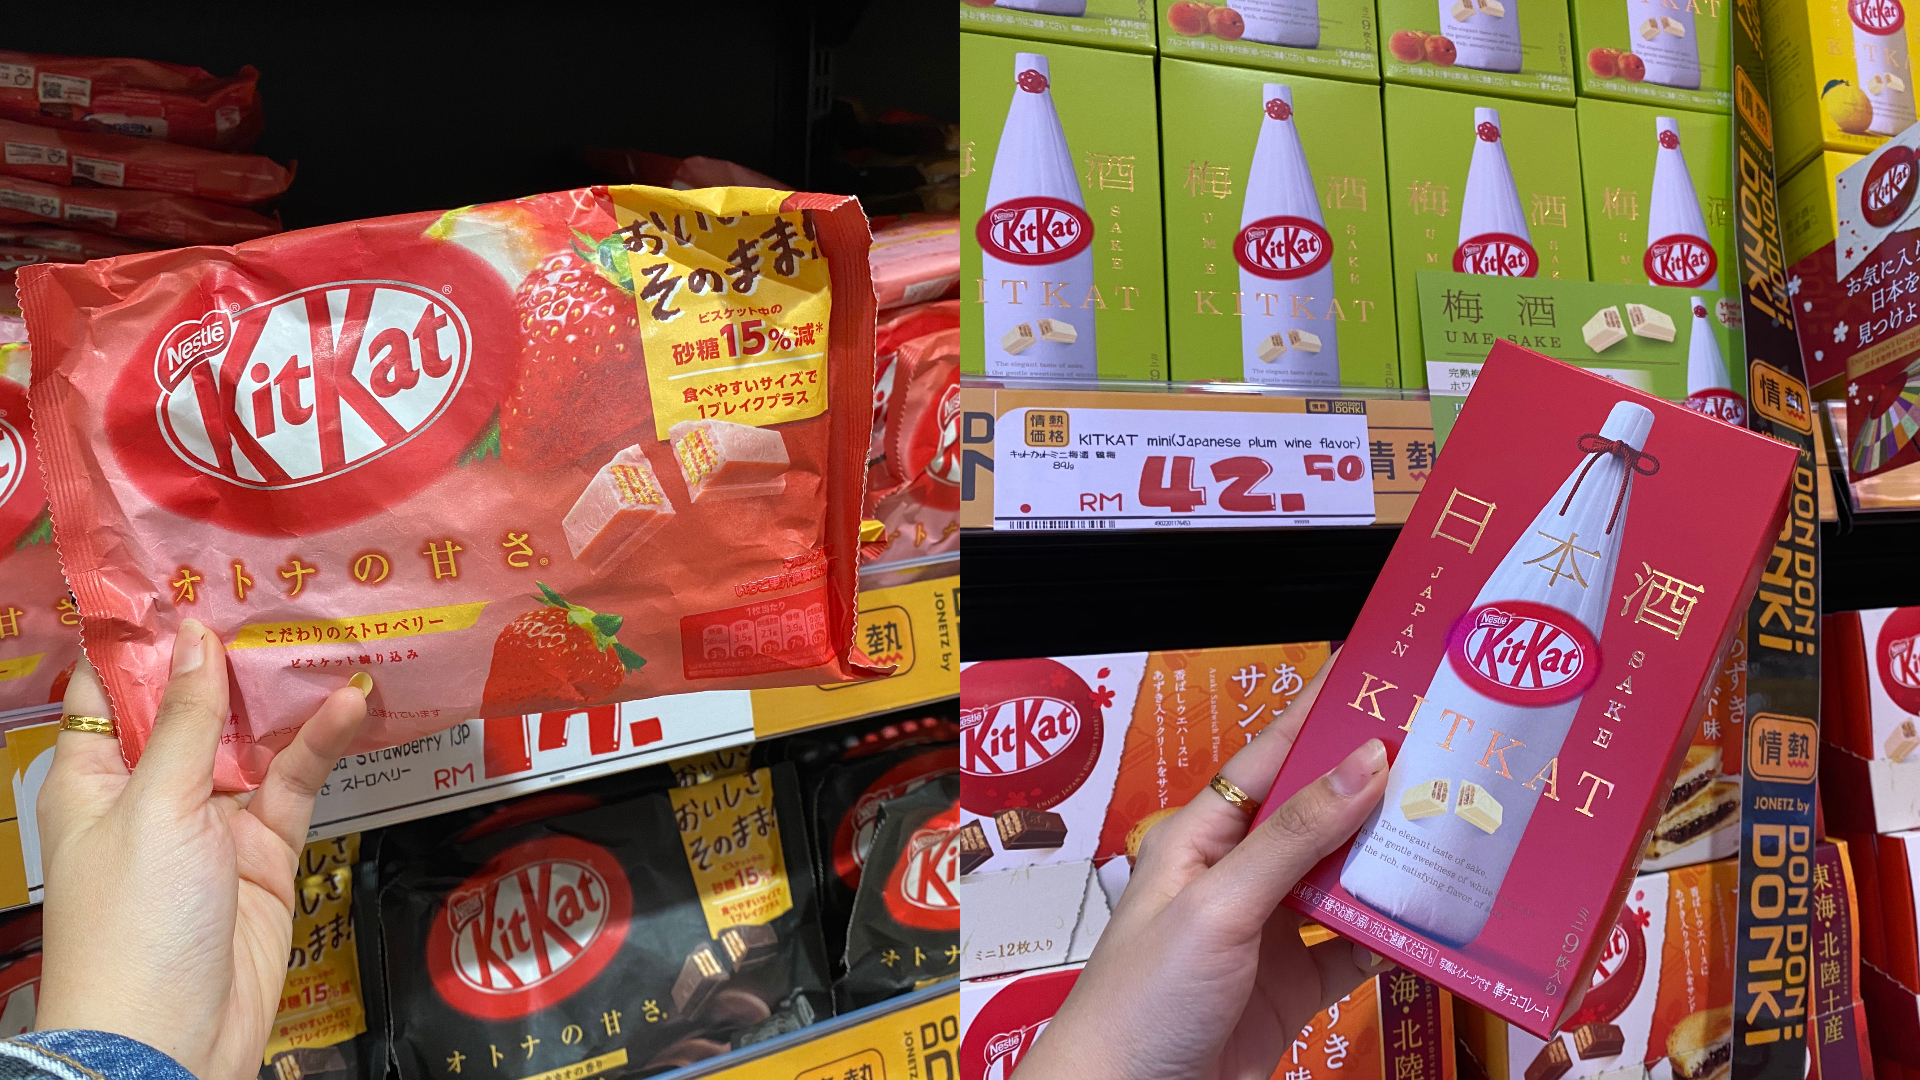 如果要送朋友礼物，可以选择广受好评的日本酒口味KitKat。-方贝欣摄-